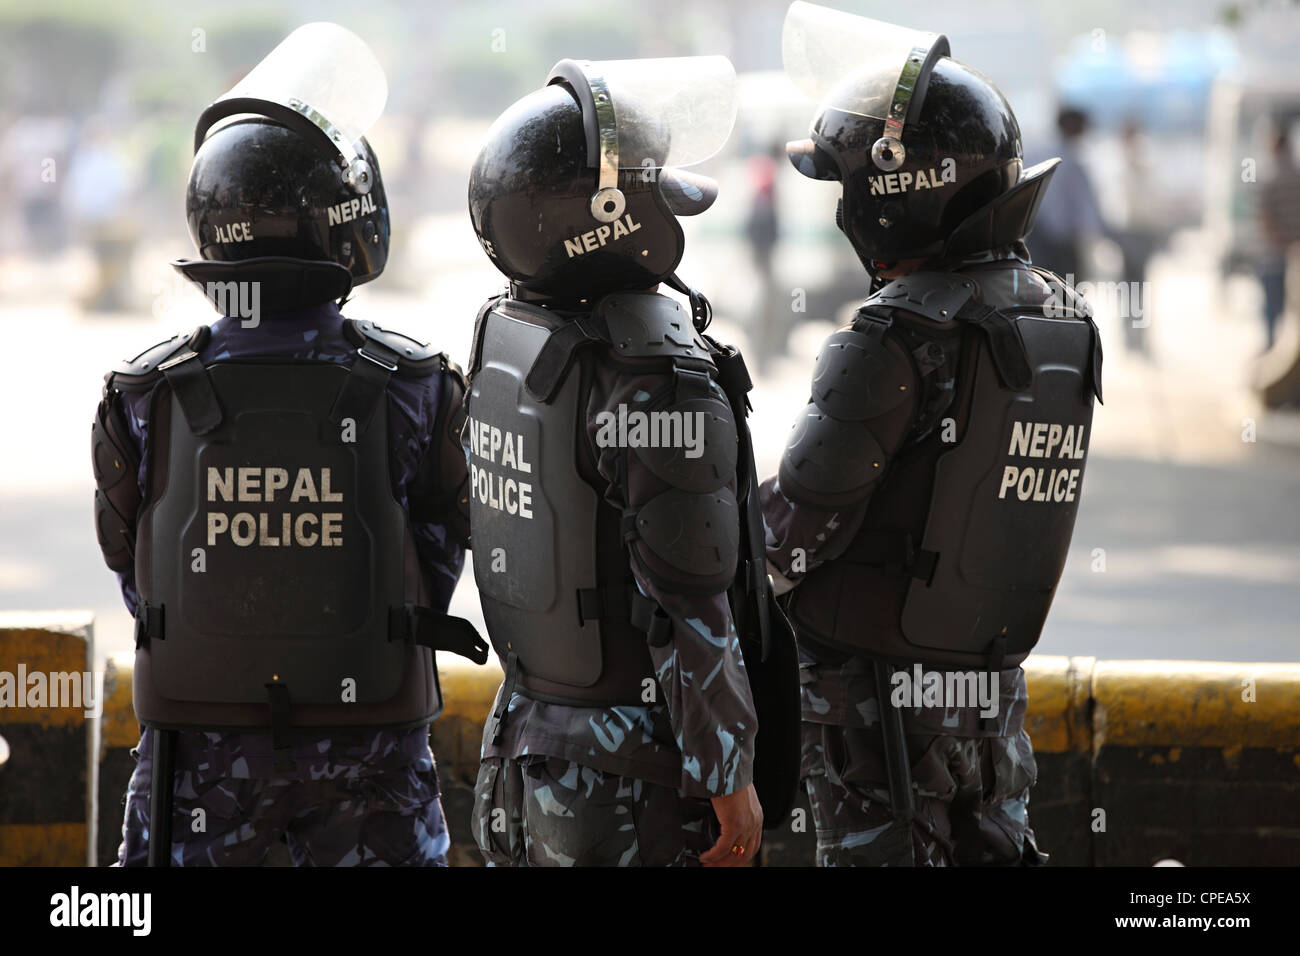 Les agents de la police népalaise Katmandou Népal Banque D'Images